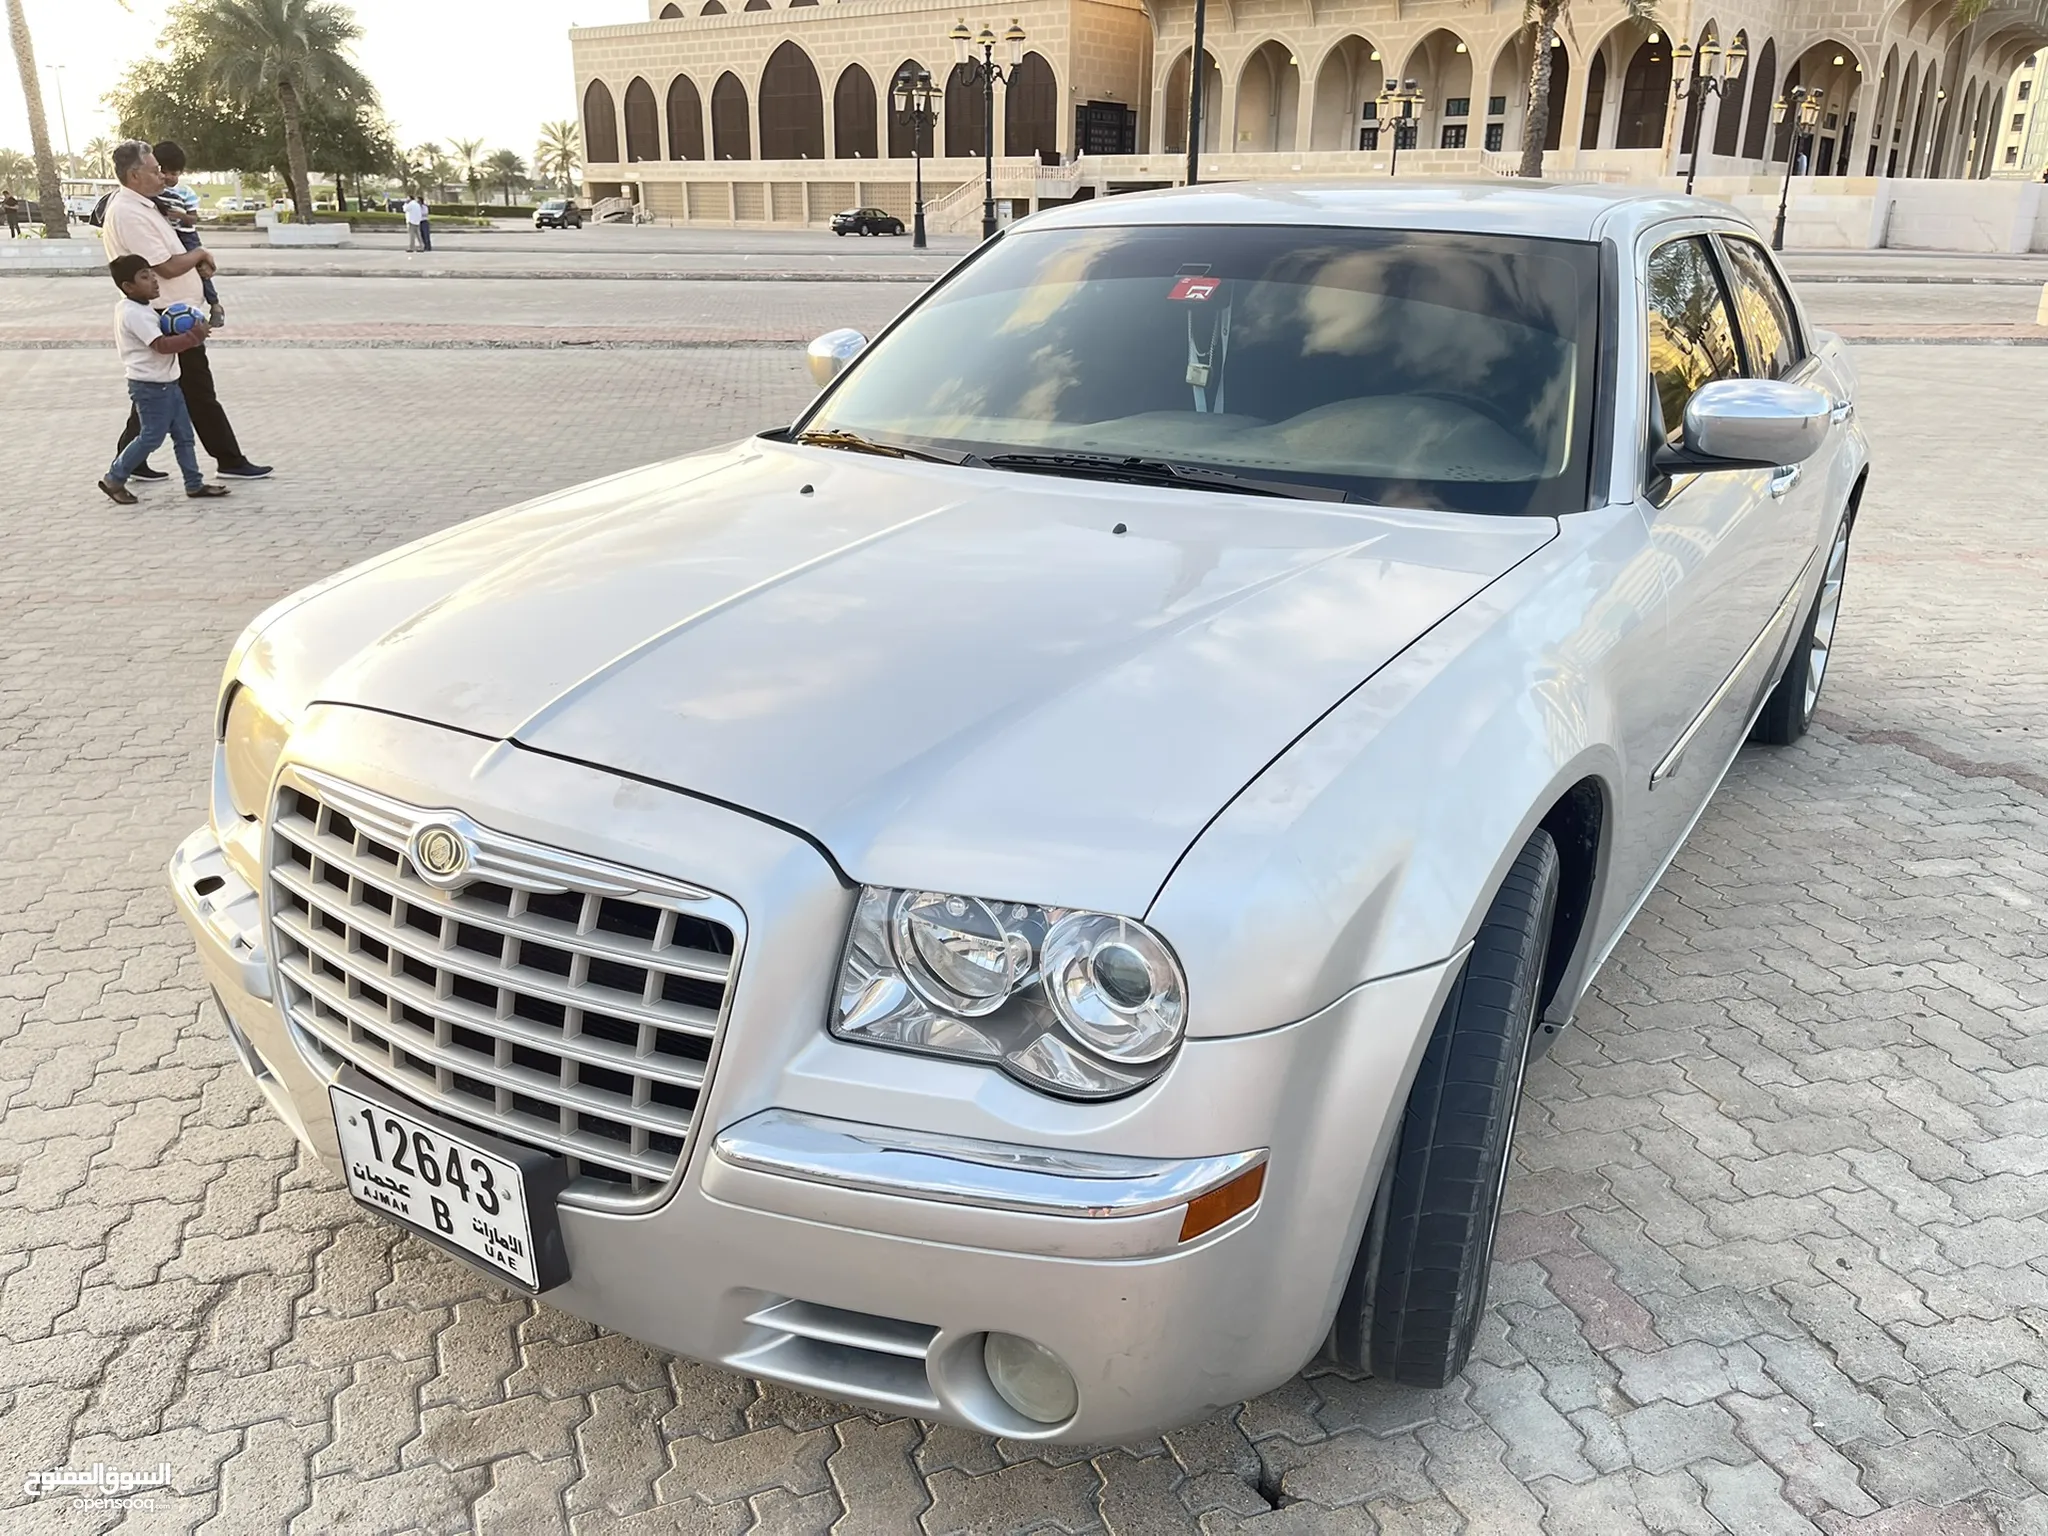 سيارات كرايسلر للبيع : ارخص الاسعار في الإمارات : جميع موديلات سيارة كرايسلر  : مستعملة وجديدة